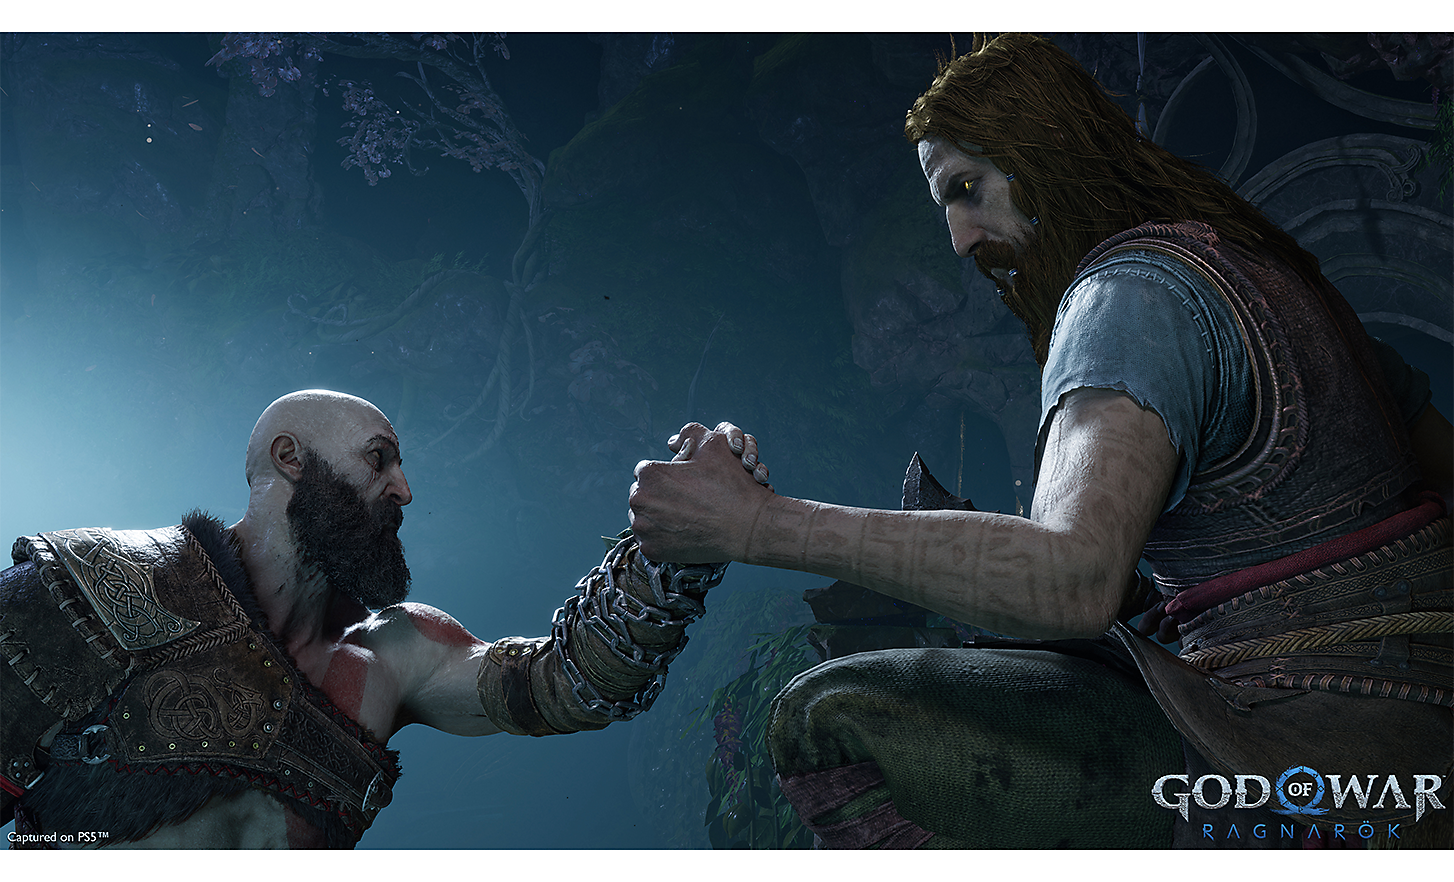 ฉากจาก God of War: Ragnarok ที่แสดงการจับมือกันระหว่างนักรบสองคน